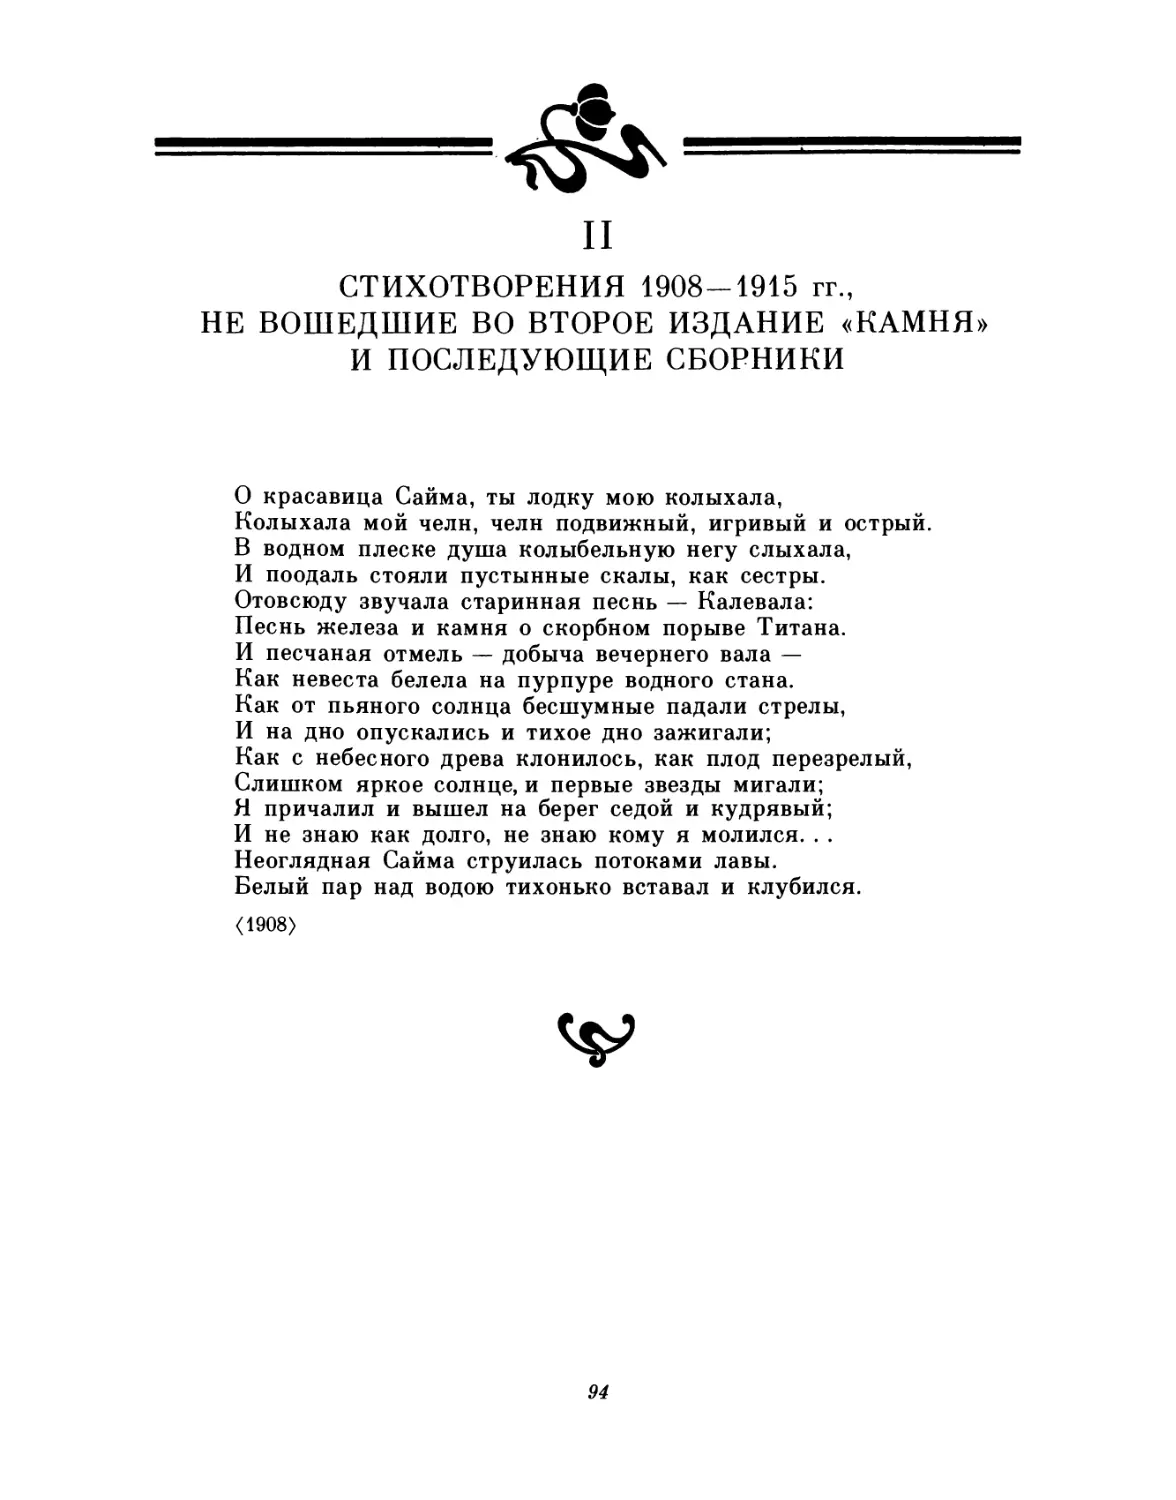 II. Стихотворения 1908-1915 гг., не вошедшие во второе издание «Камня» и последующие сборники